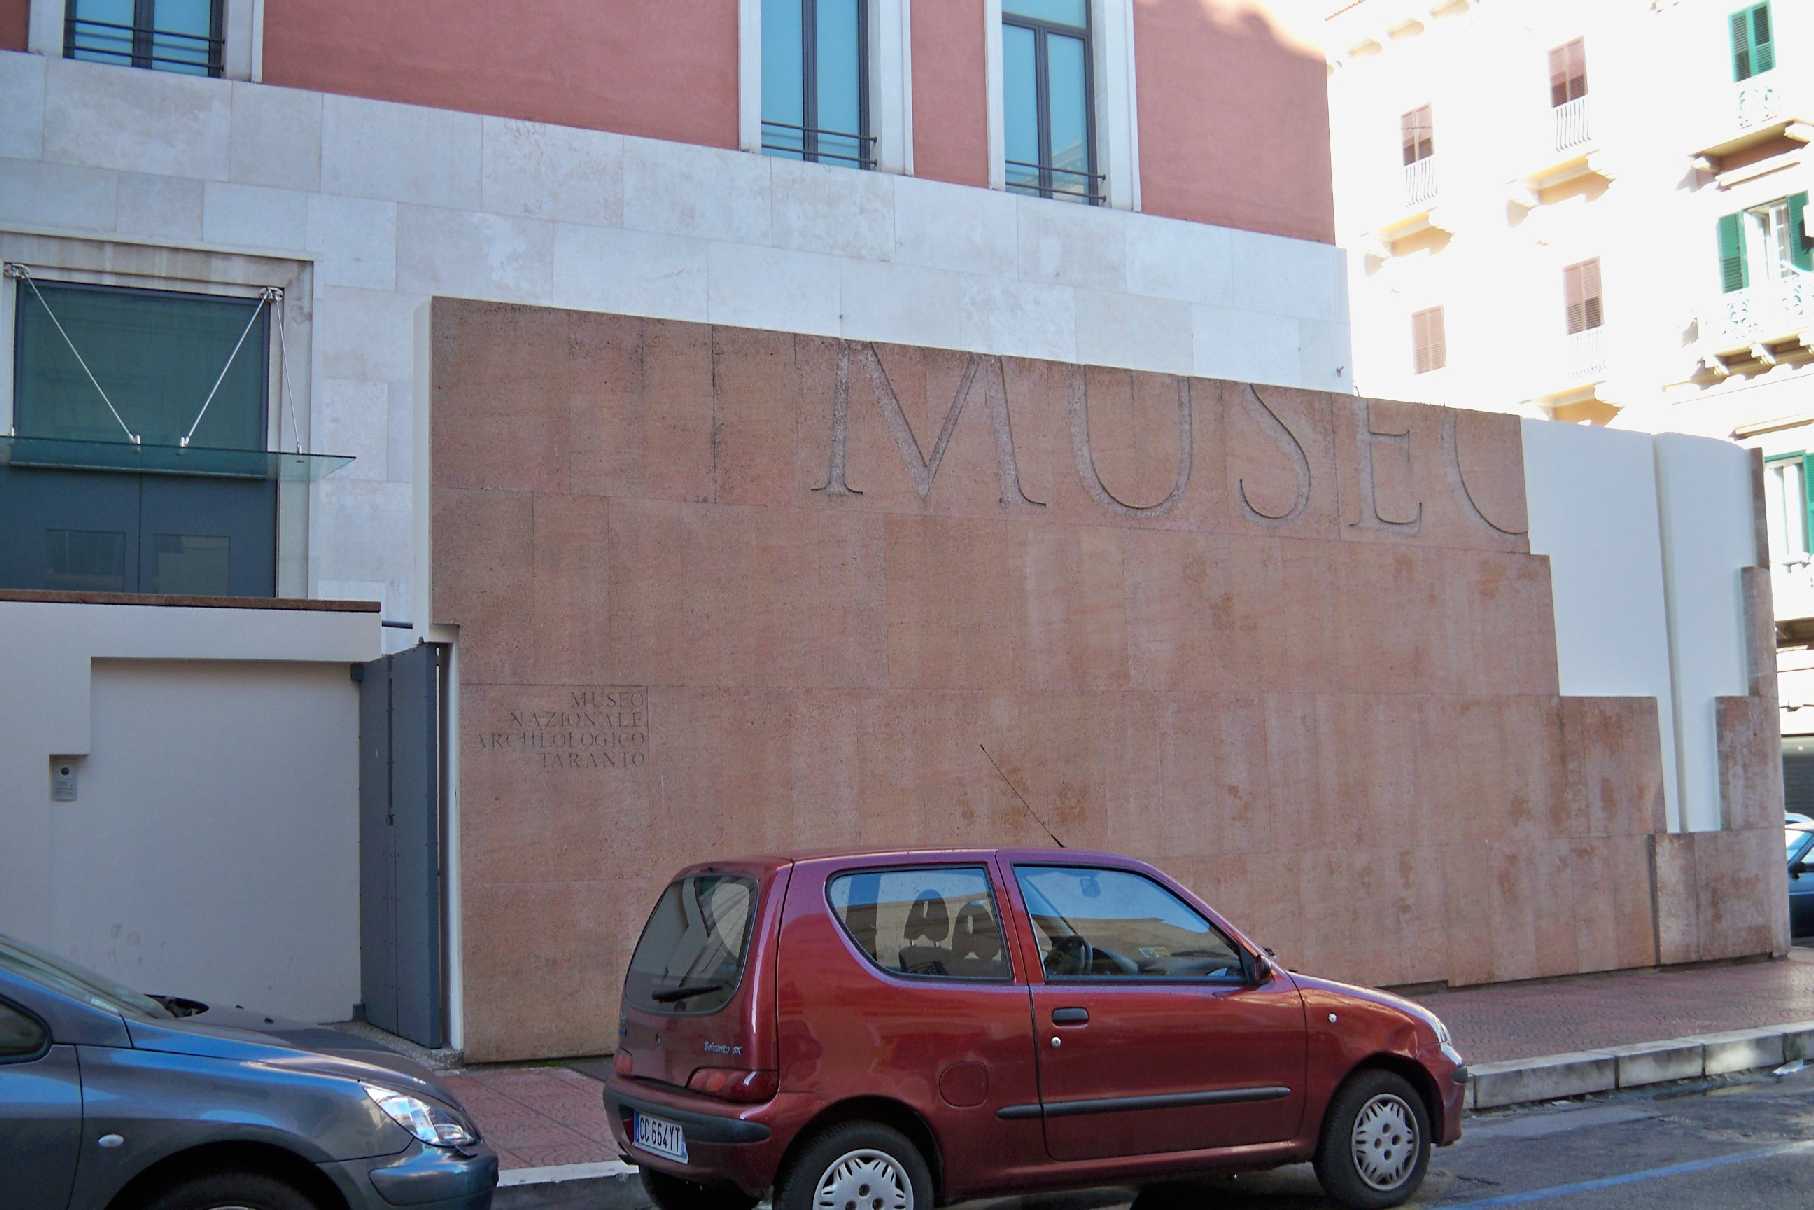 Taranto Museum